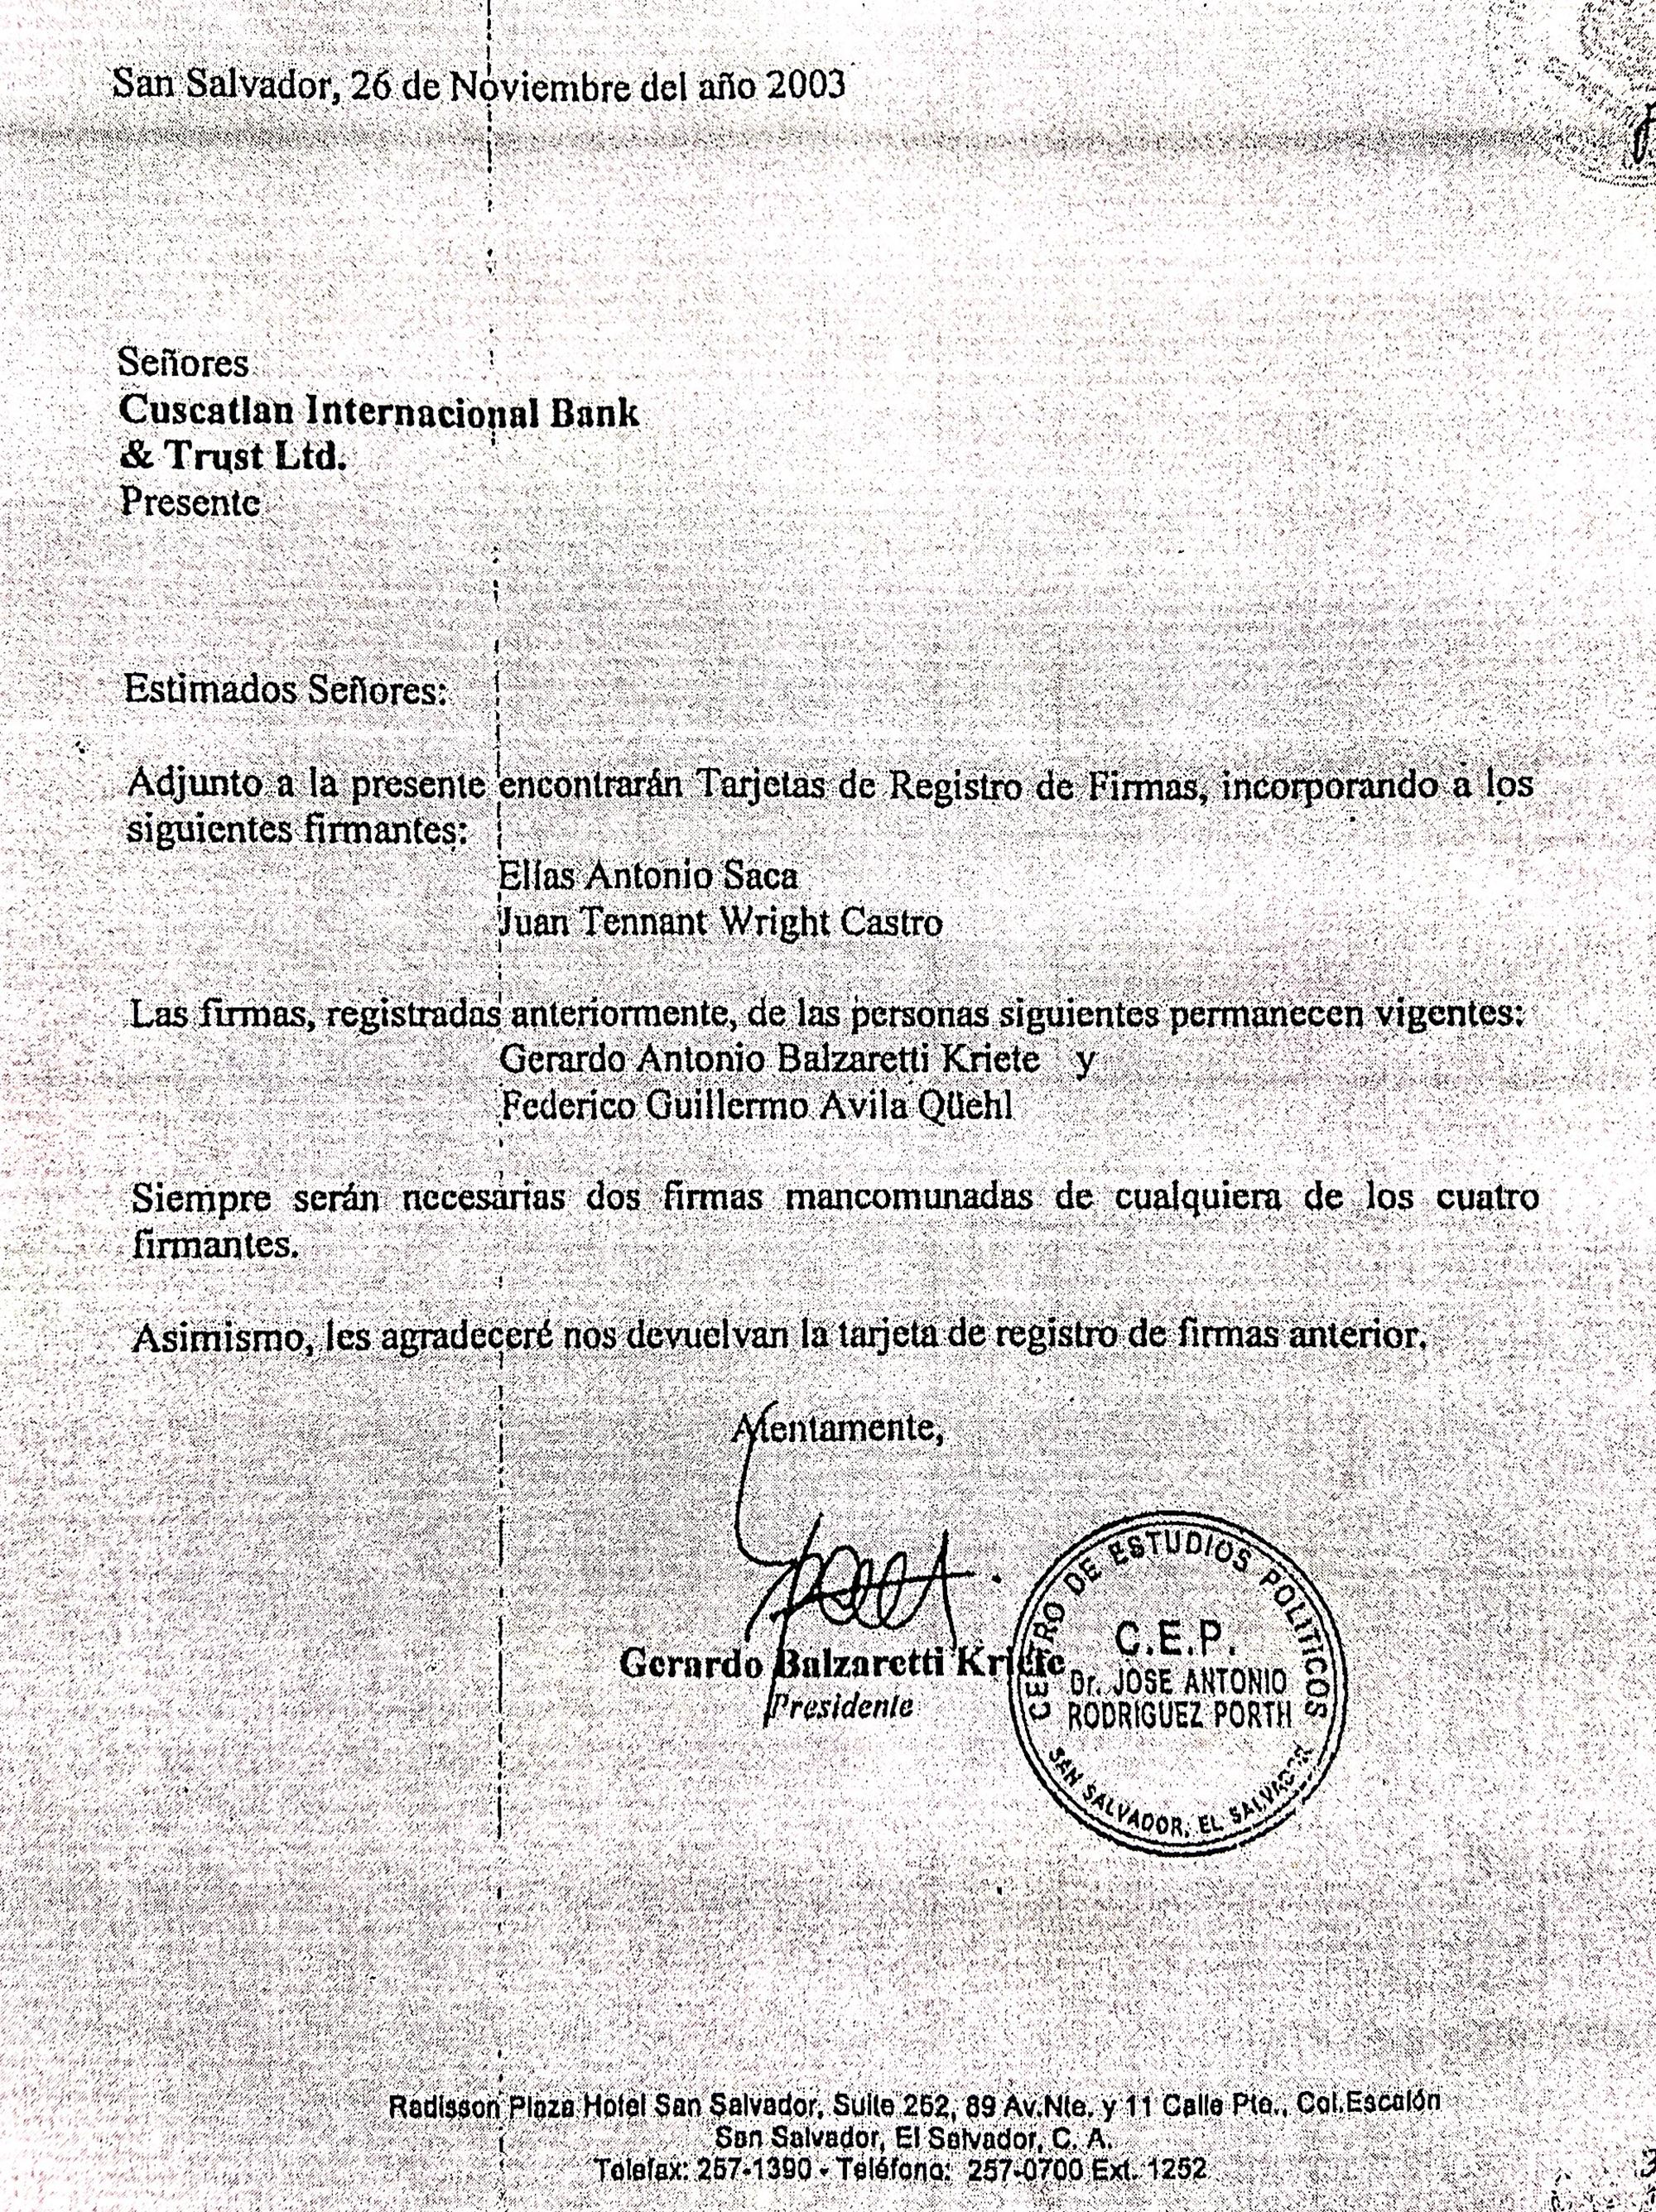 El 26 de noviembre de 2003, Balzaretti pidió al banco incorporar la firma de Antonio Saca y Juan Wrigth a la cuenta del CEP. La Fiscalía de Costa Rica no encontró el documento donde ellos hayan firmado. Wright dice que esa solicitud no prueba que tuvo dominio sobre la cuenta.